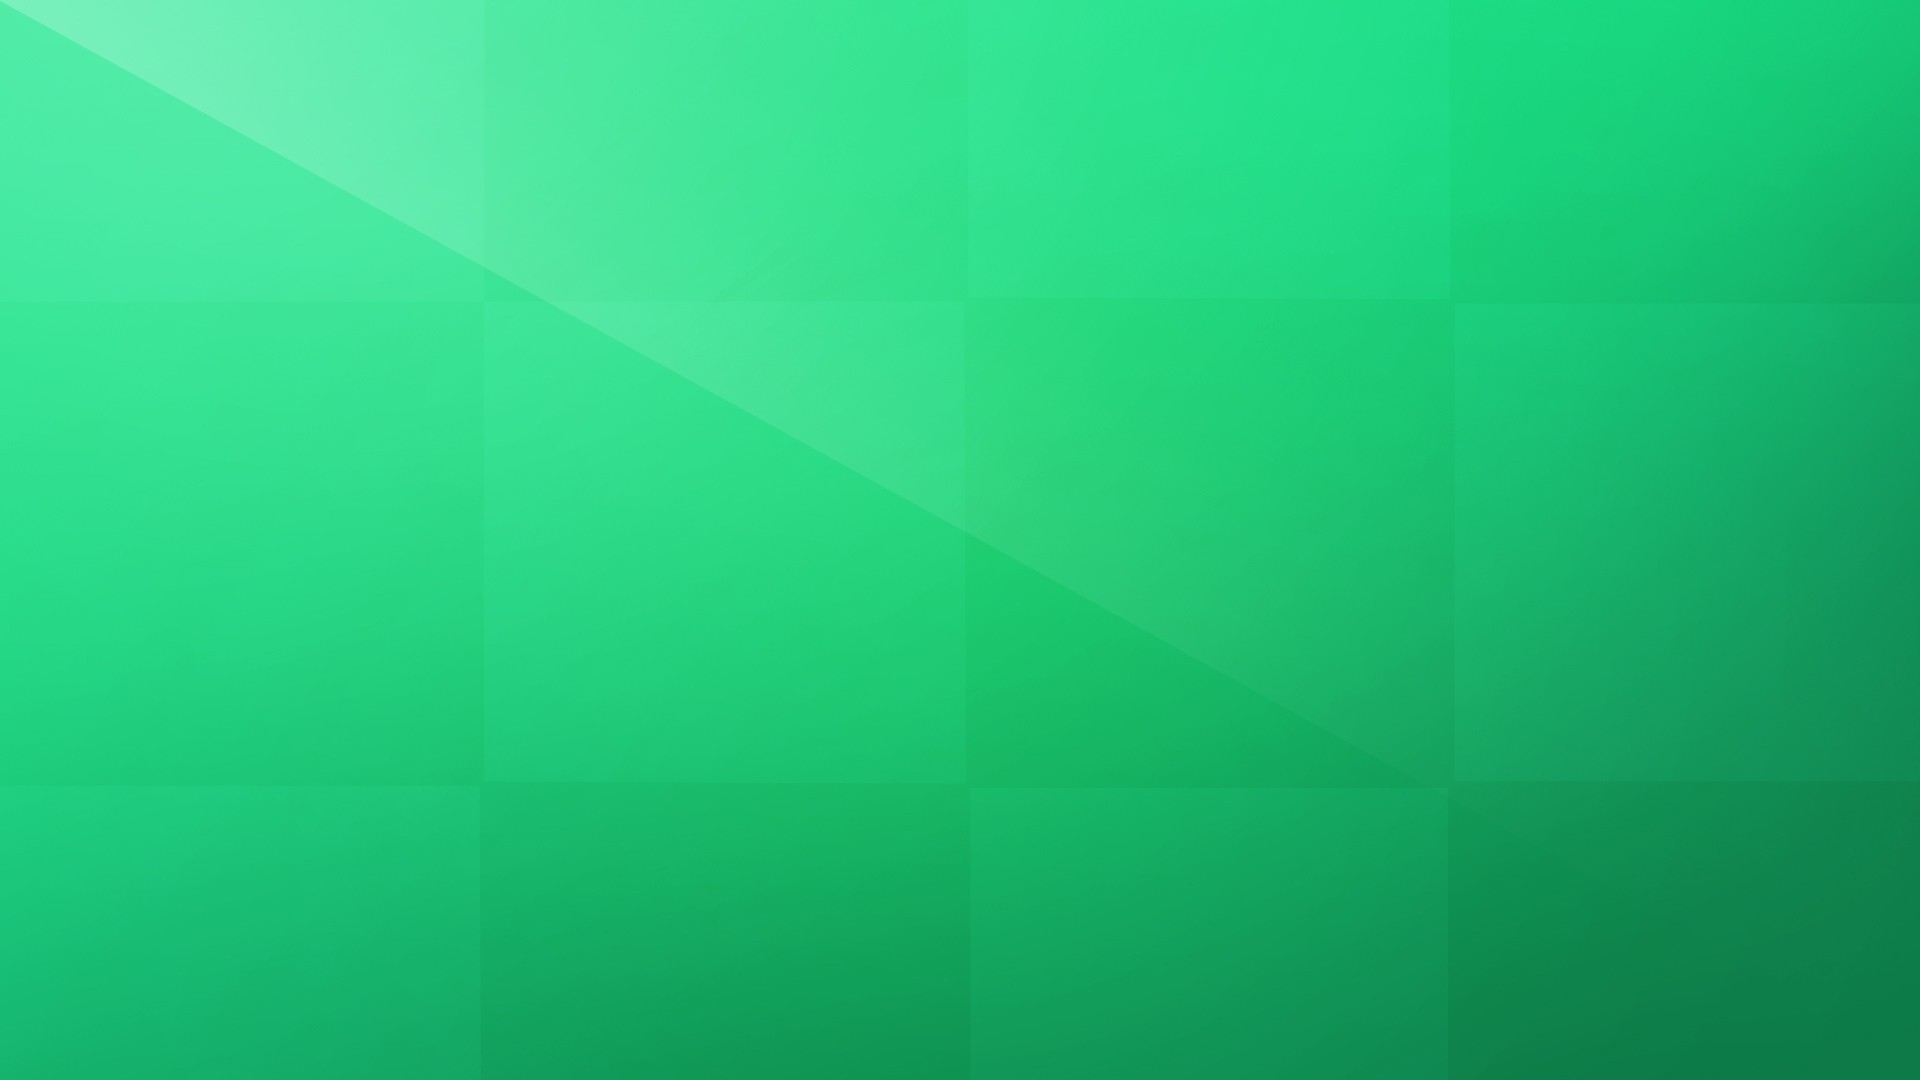 Hệ điều hành Windows 8 có độ trễ màu xanh lá cây rất đẹp và trừu tượng. Hãy khám phá vẻ đẹp màu xanh lá cây tuyệt đẹp của nó trên máy tính của bạn. Điều này làm cho hình ảnh trên máy tính của bạn trở nên sống động và tươi mới hơn bao giờ hết!